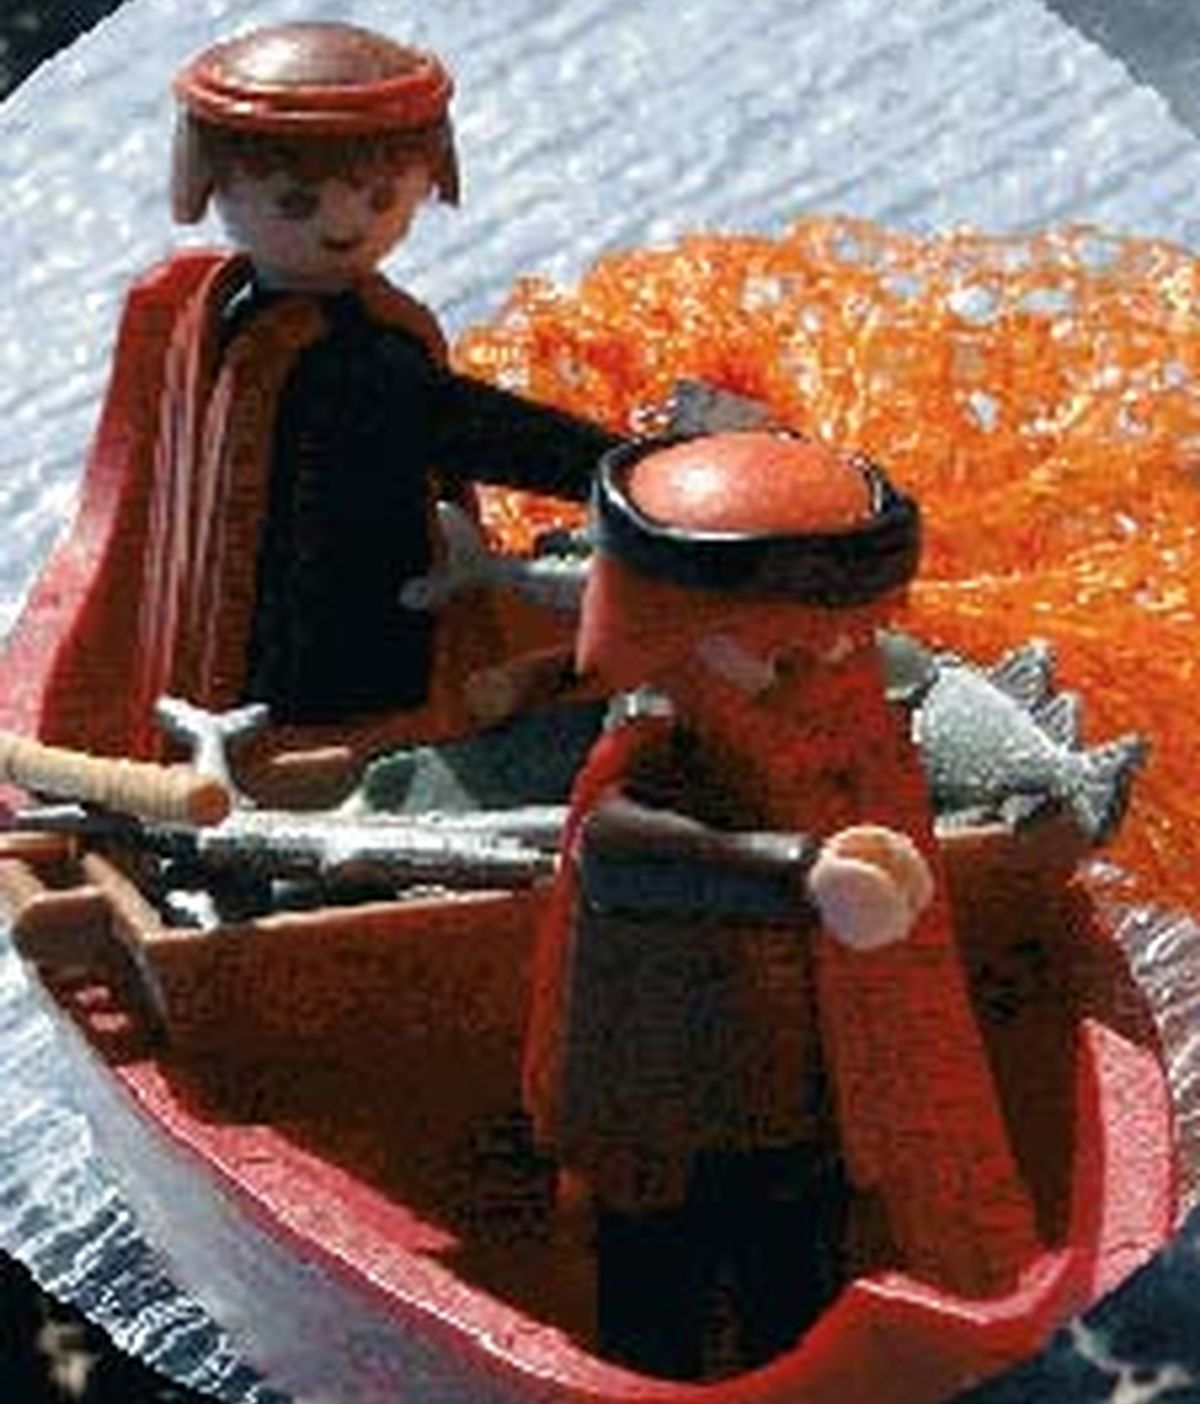 El fabricante Playmobil ha demandado a un pastor protestante por utilizar sus muñecos para representar la Biblia. Foto de la web del religioso alemán.